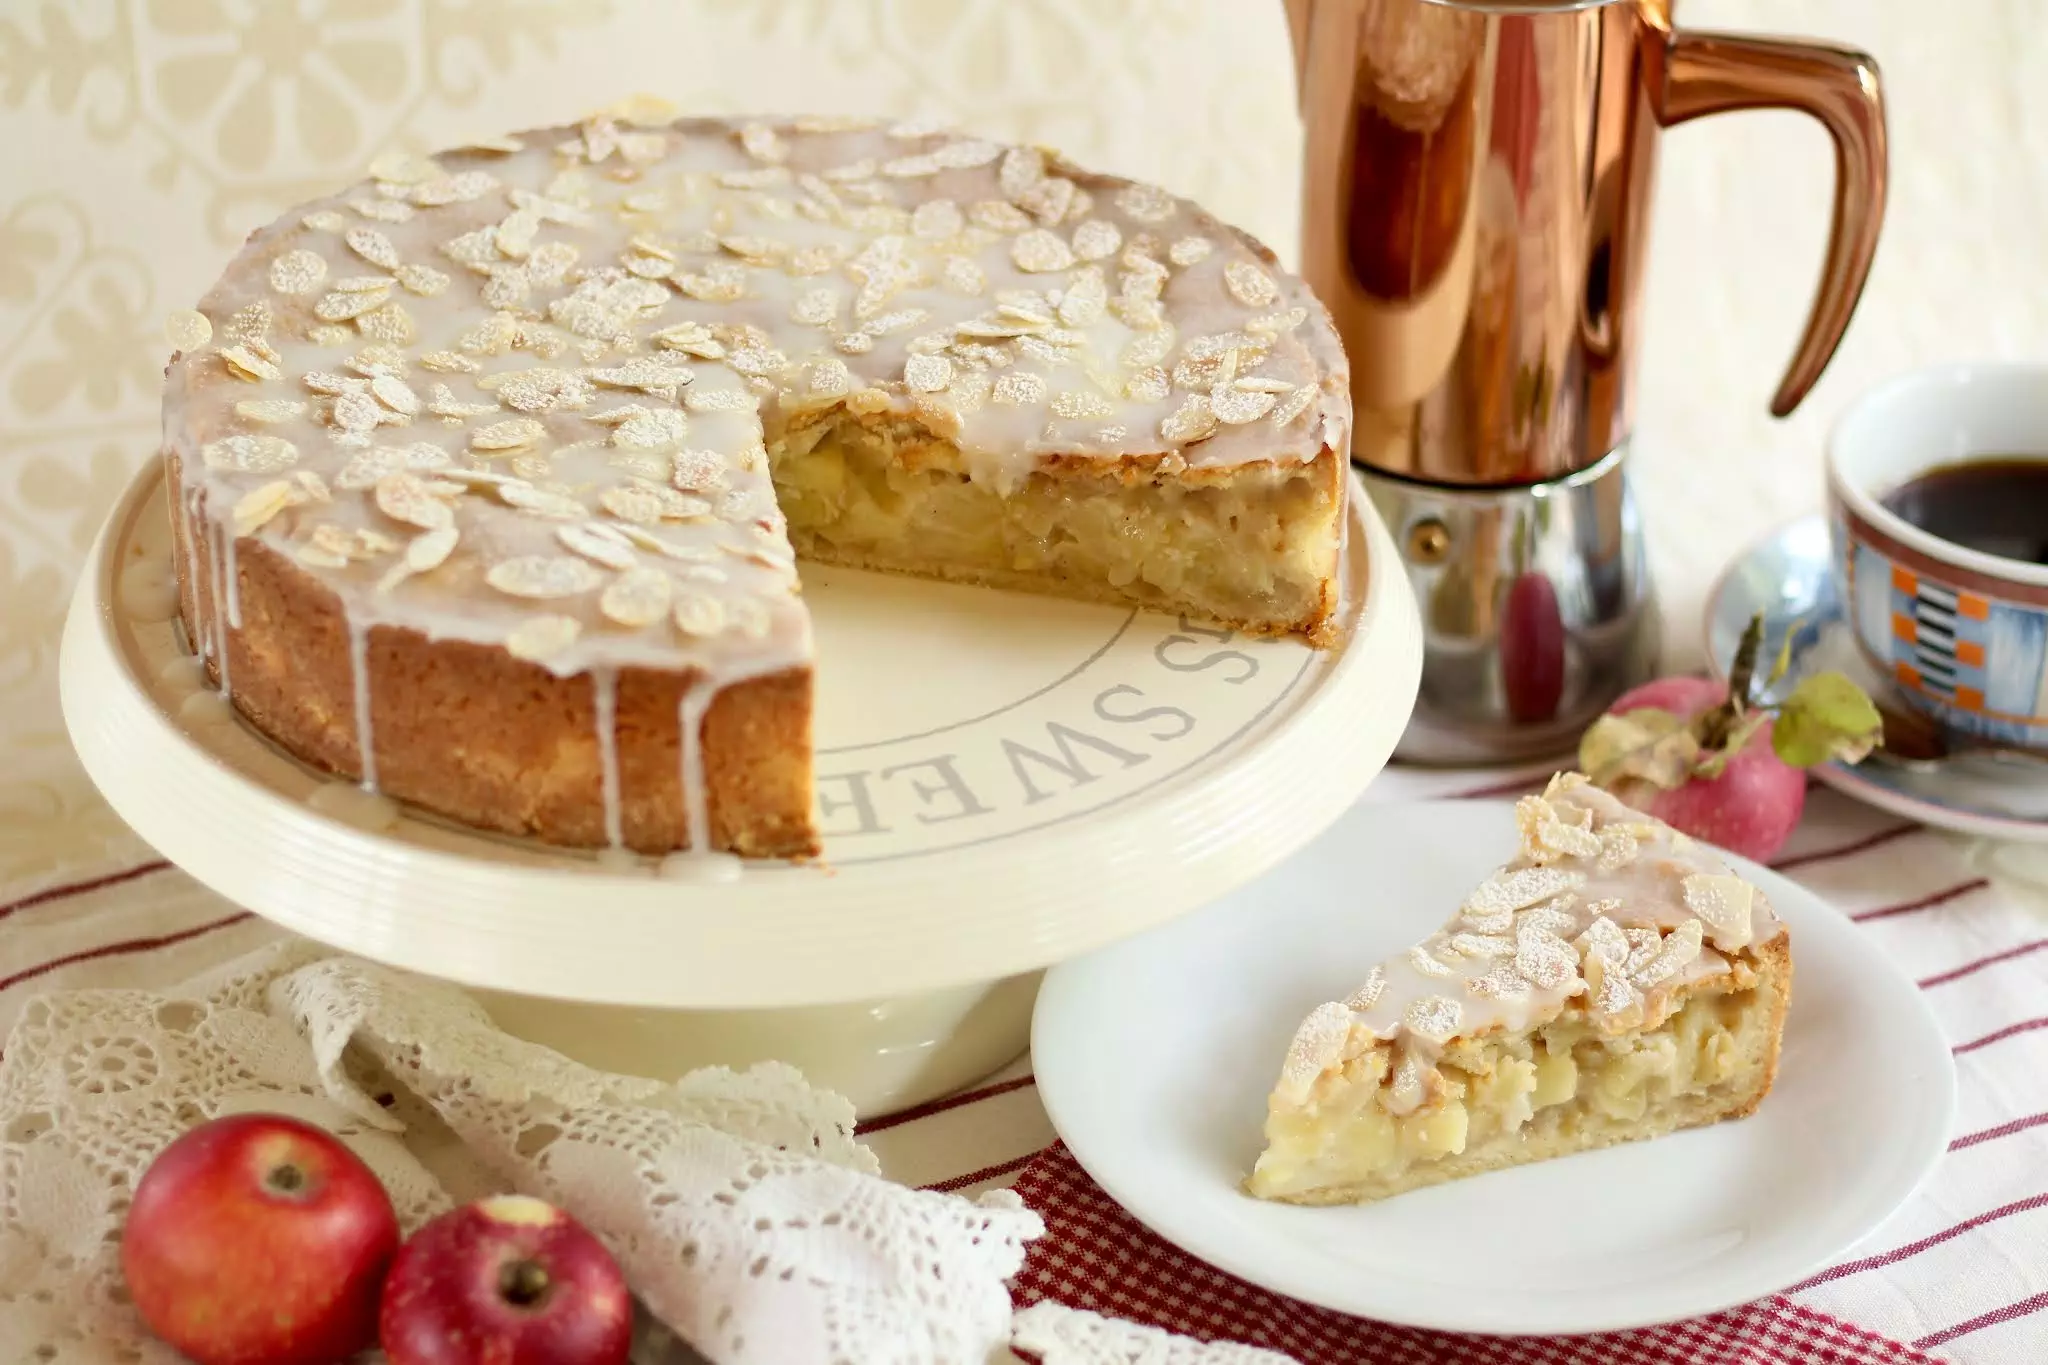 Der Kuchenklassiker: Gedeckter Apfelkuchen. Köstliche, herbstliche Apfeltorte! | Rezept und Video